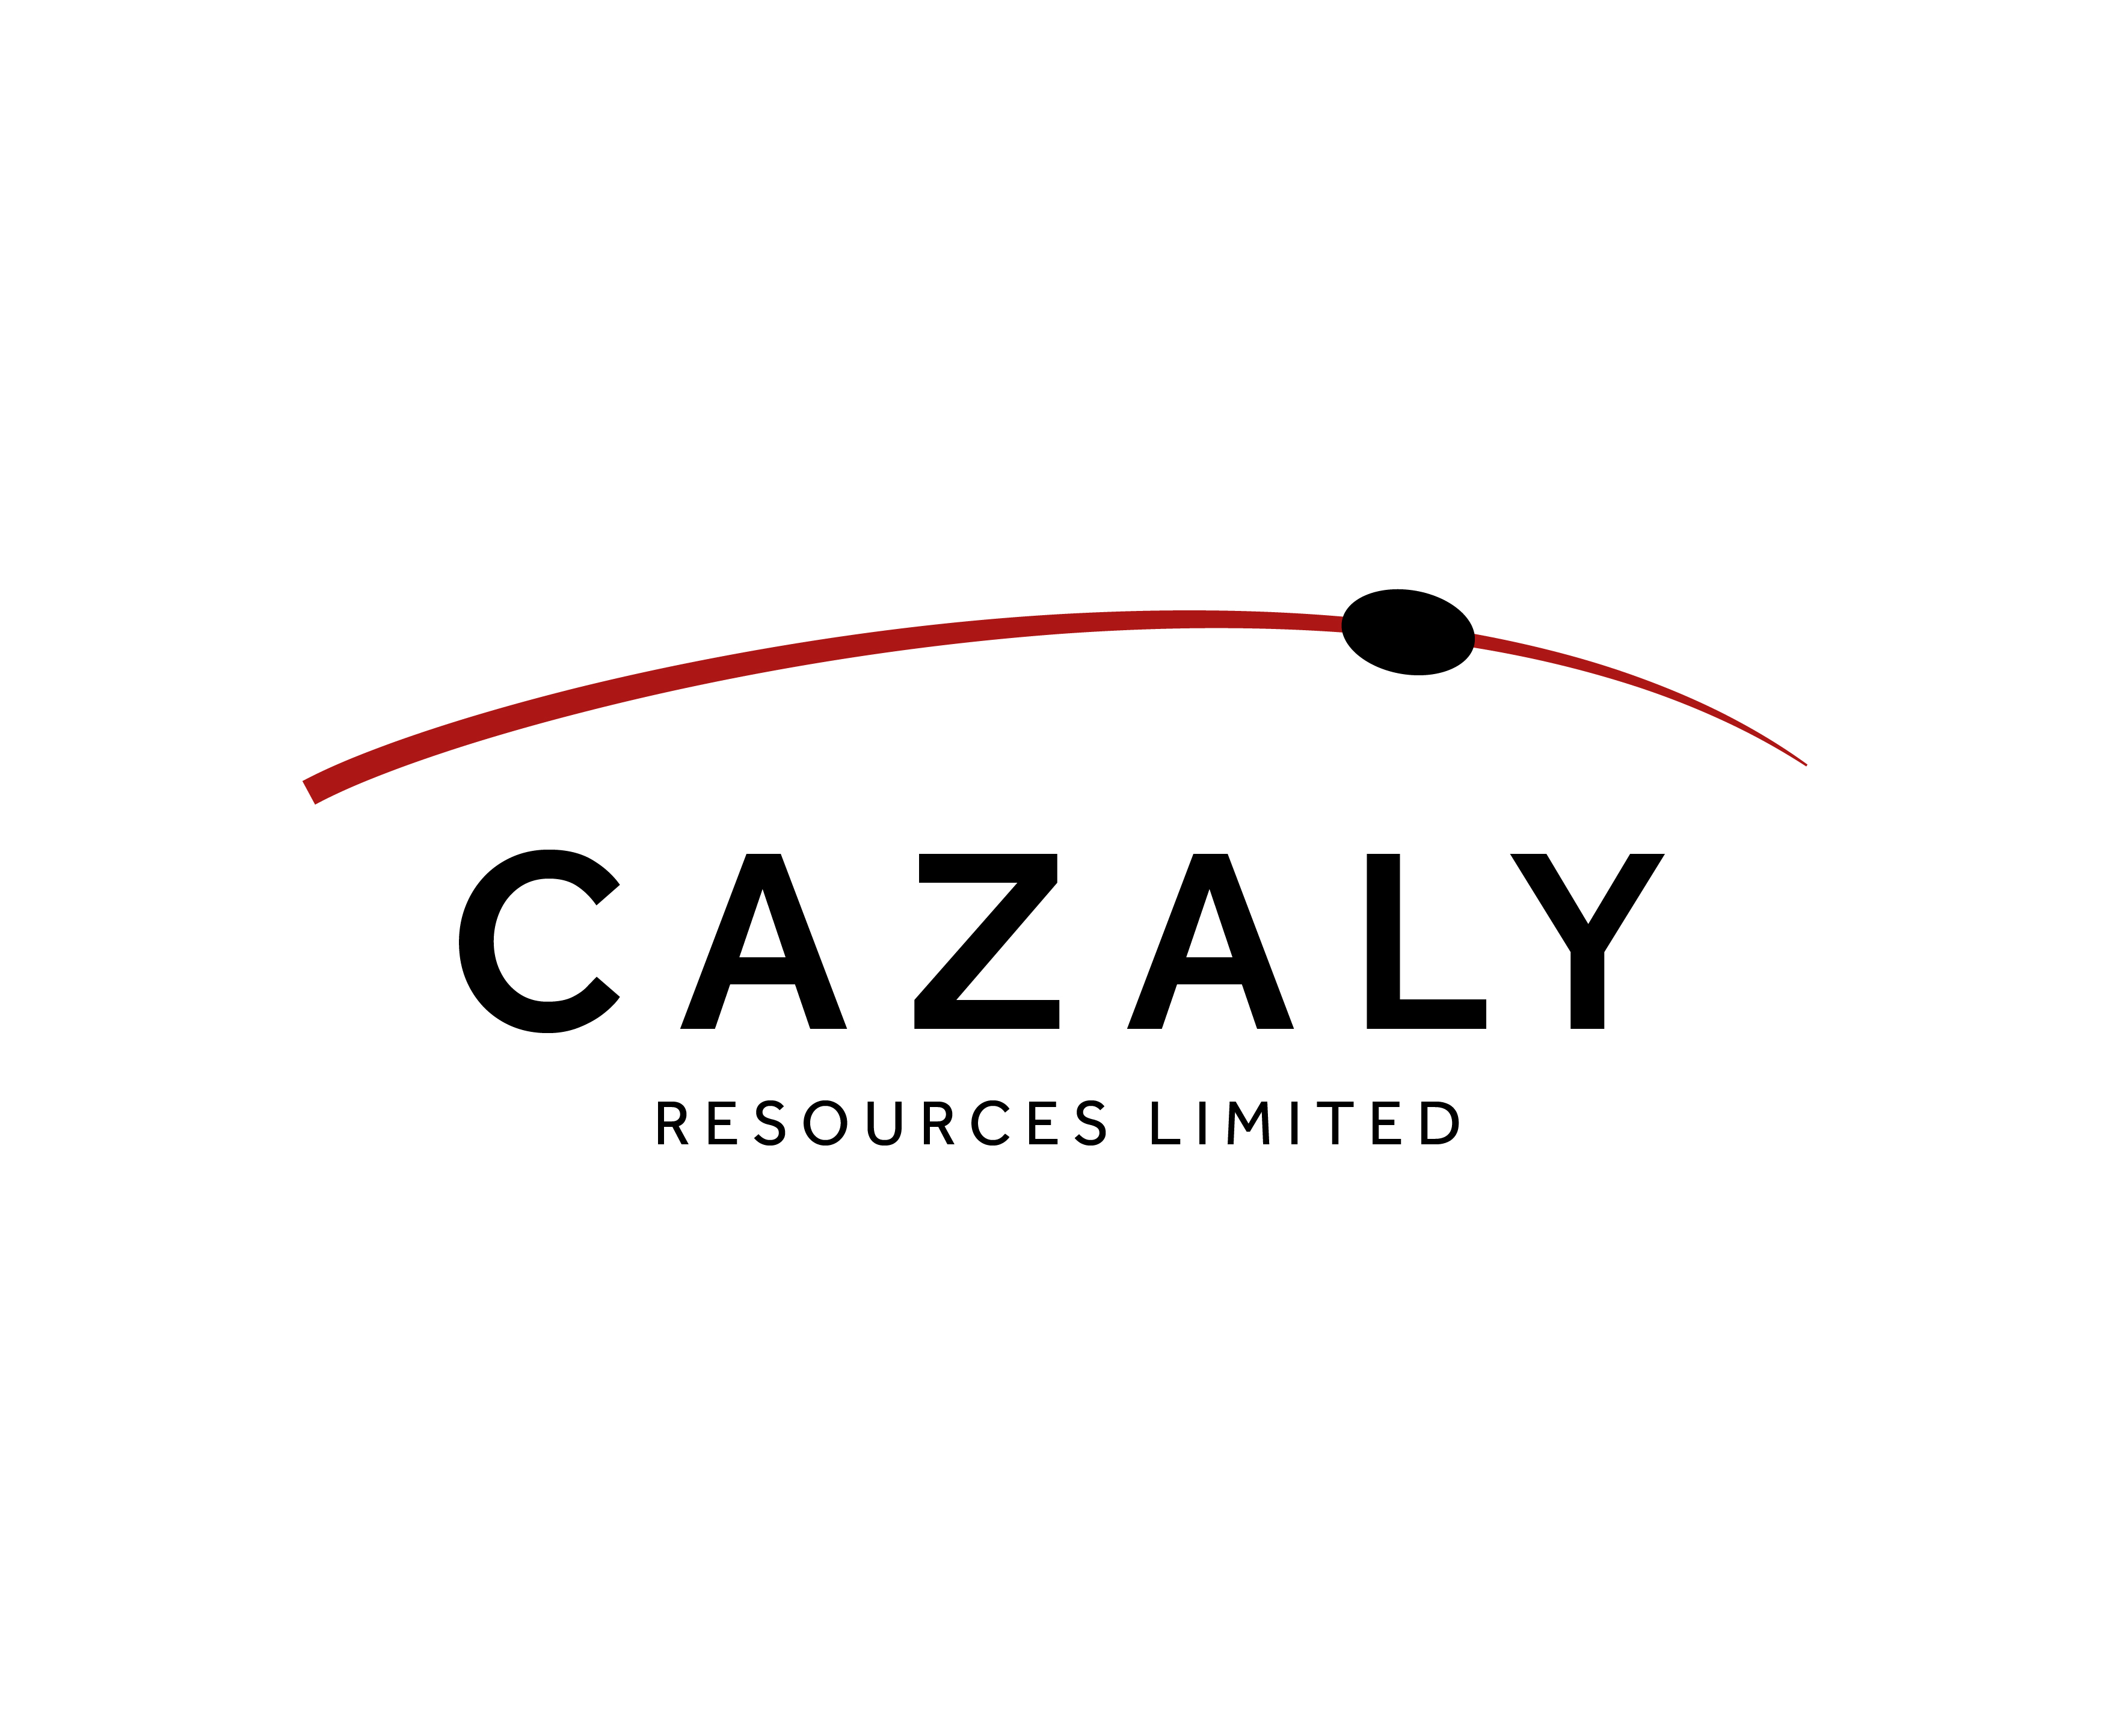 Cazaly Resources Ltd